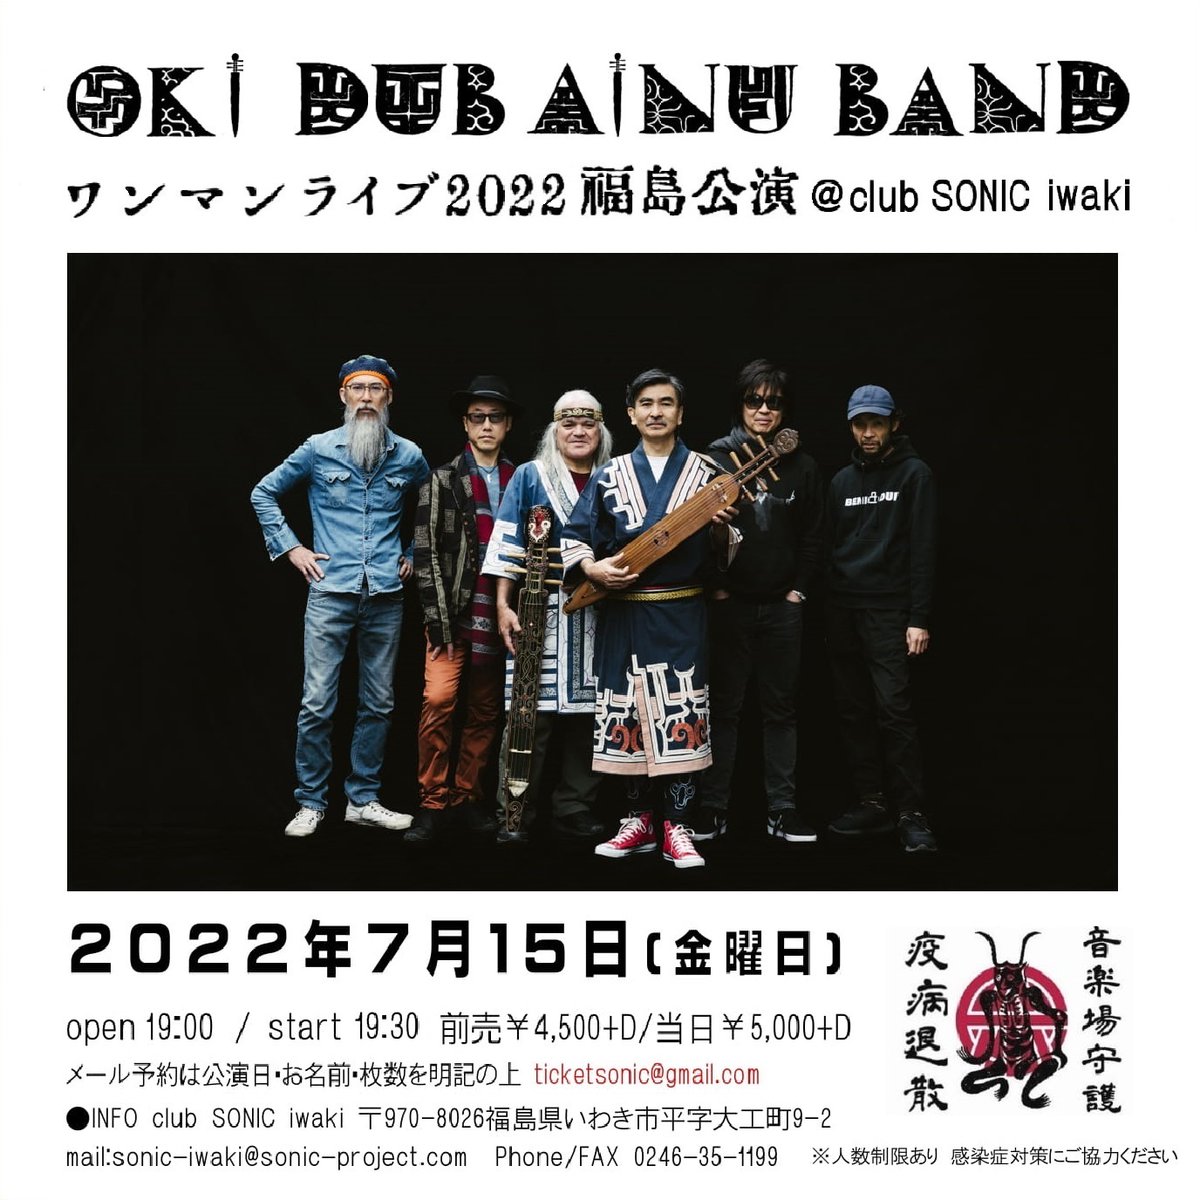 7/15(金)OKI DUB AINU BAND 福島公演@club SONIC iwaki